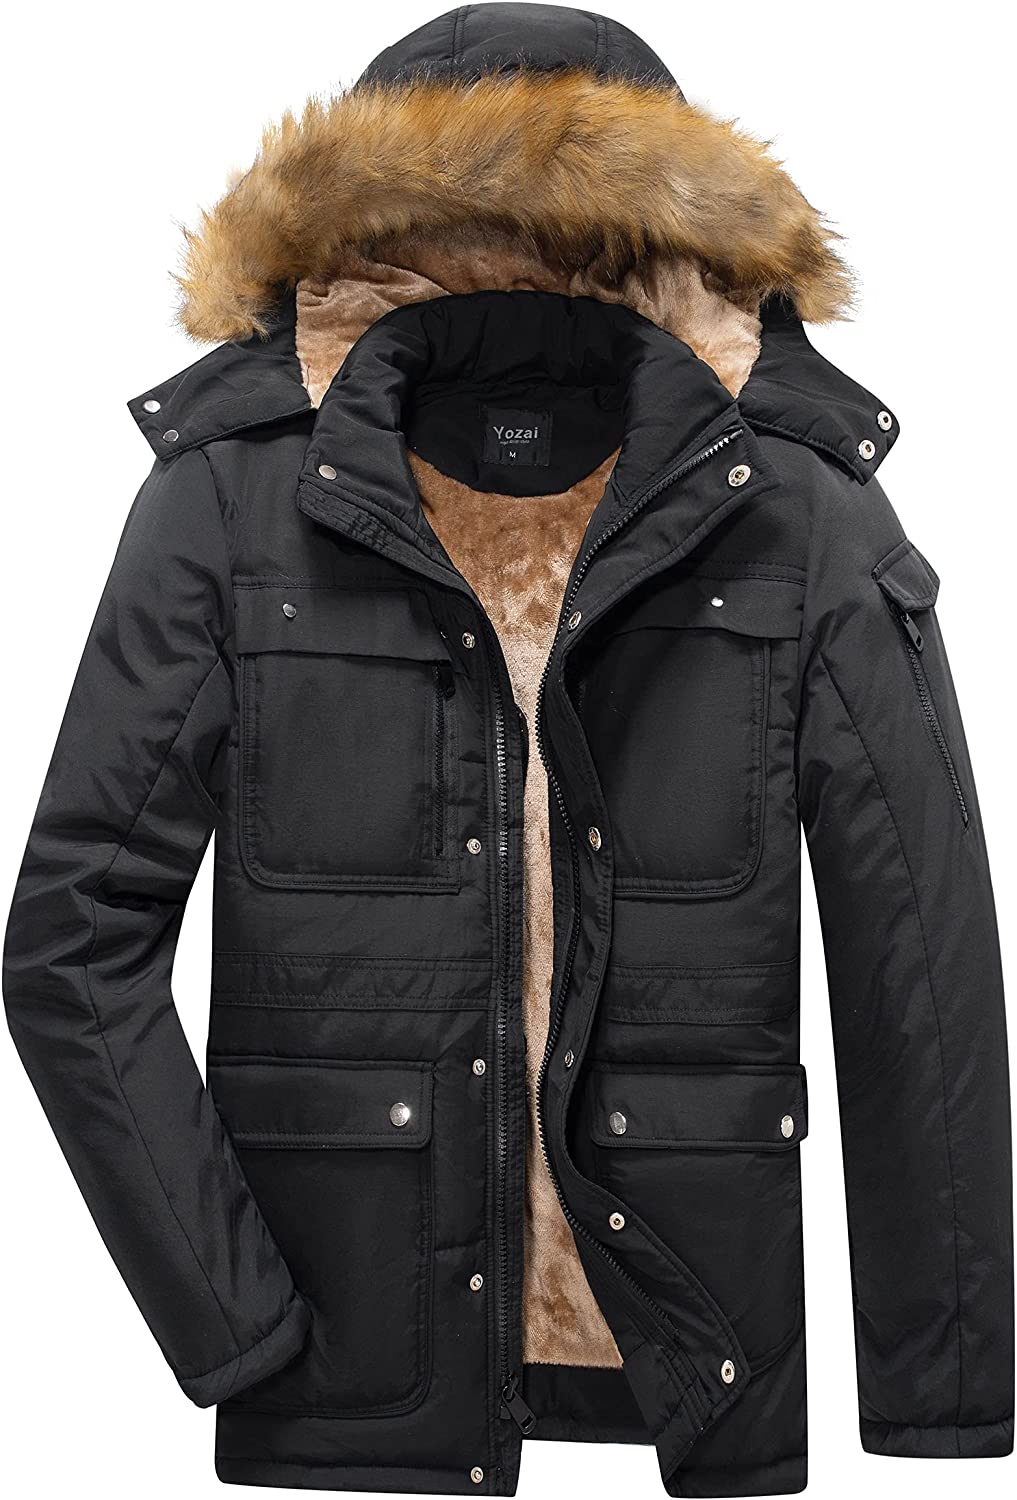 Buy Yozai Men's Winter Coat, Warm Jackets for Mens Water Resistant